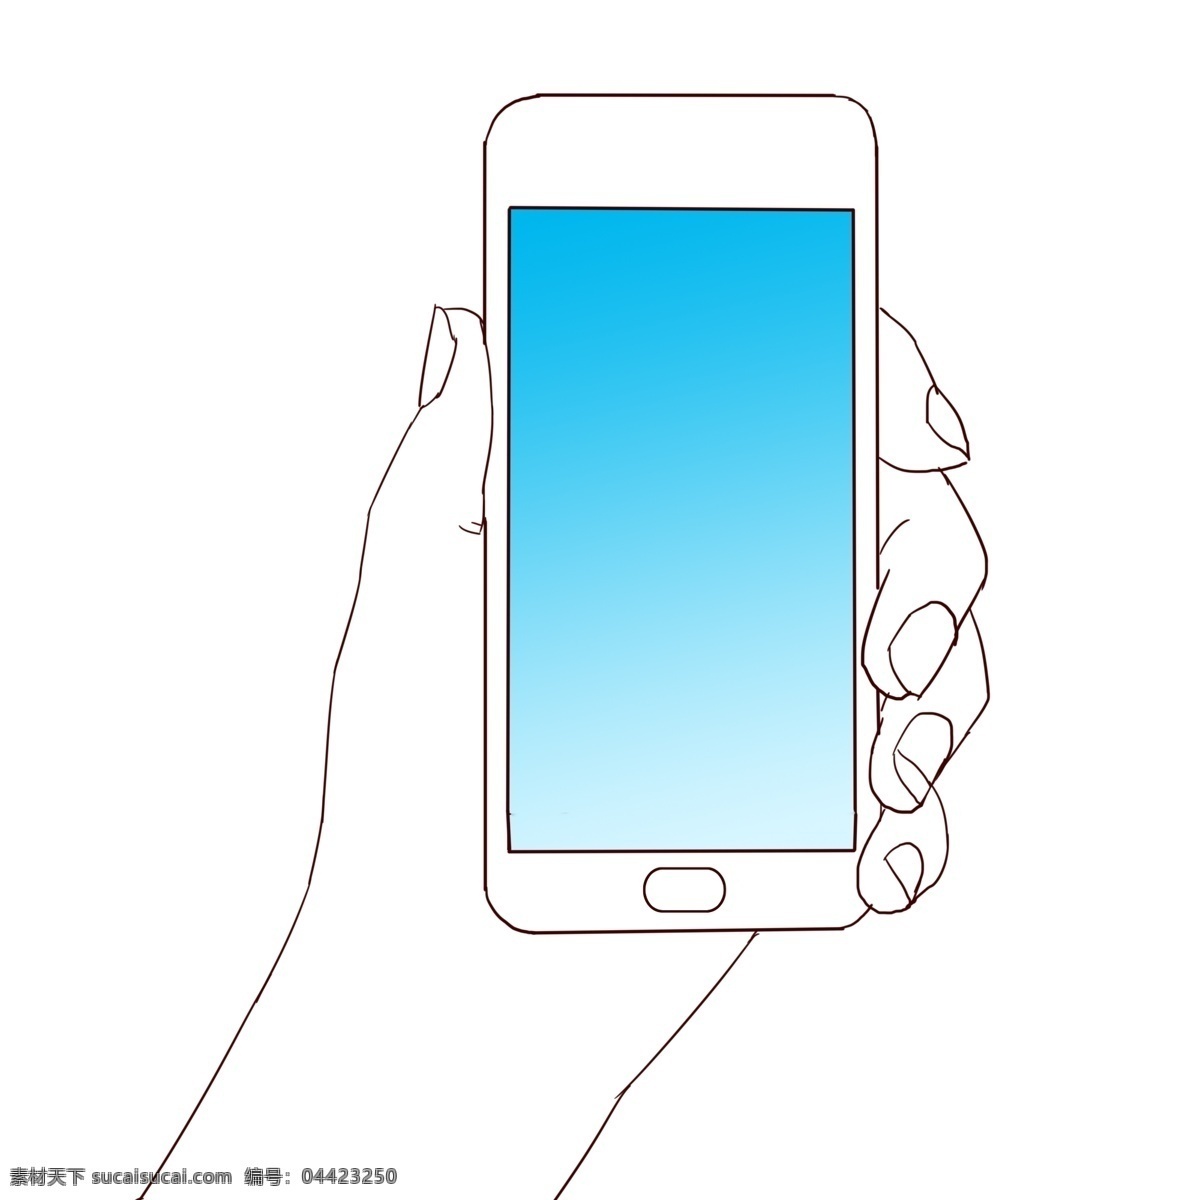 手指 手 手机 抽象 图案 卡通 装饰 手指动作 手拿手机 白描写意 漂亮 线条 平面装饰 极简线条